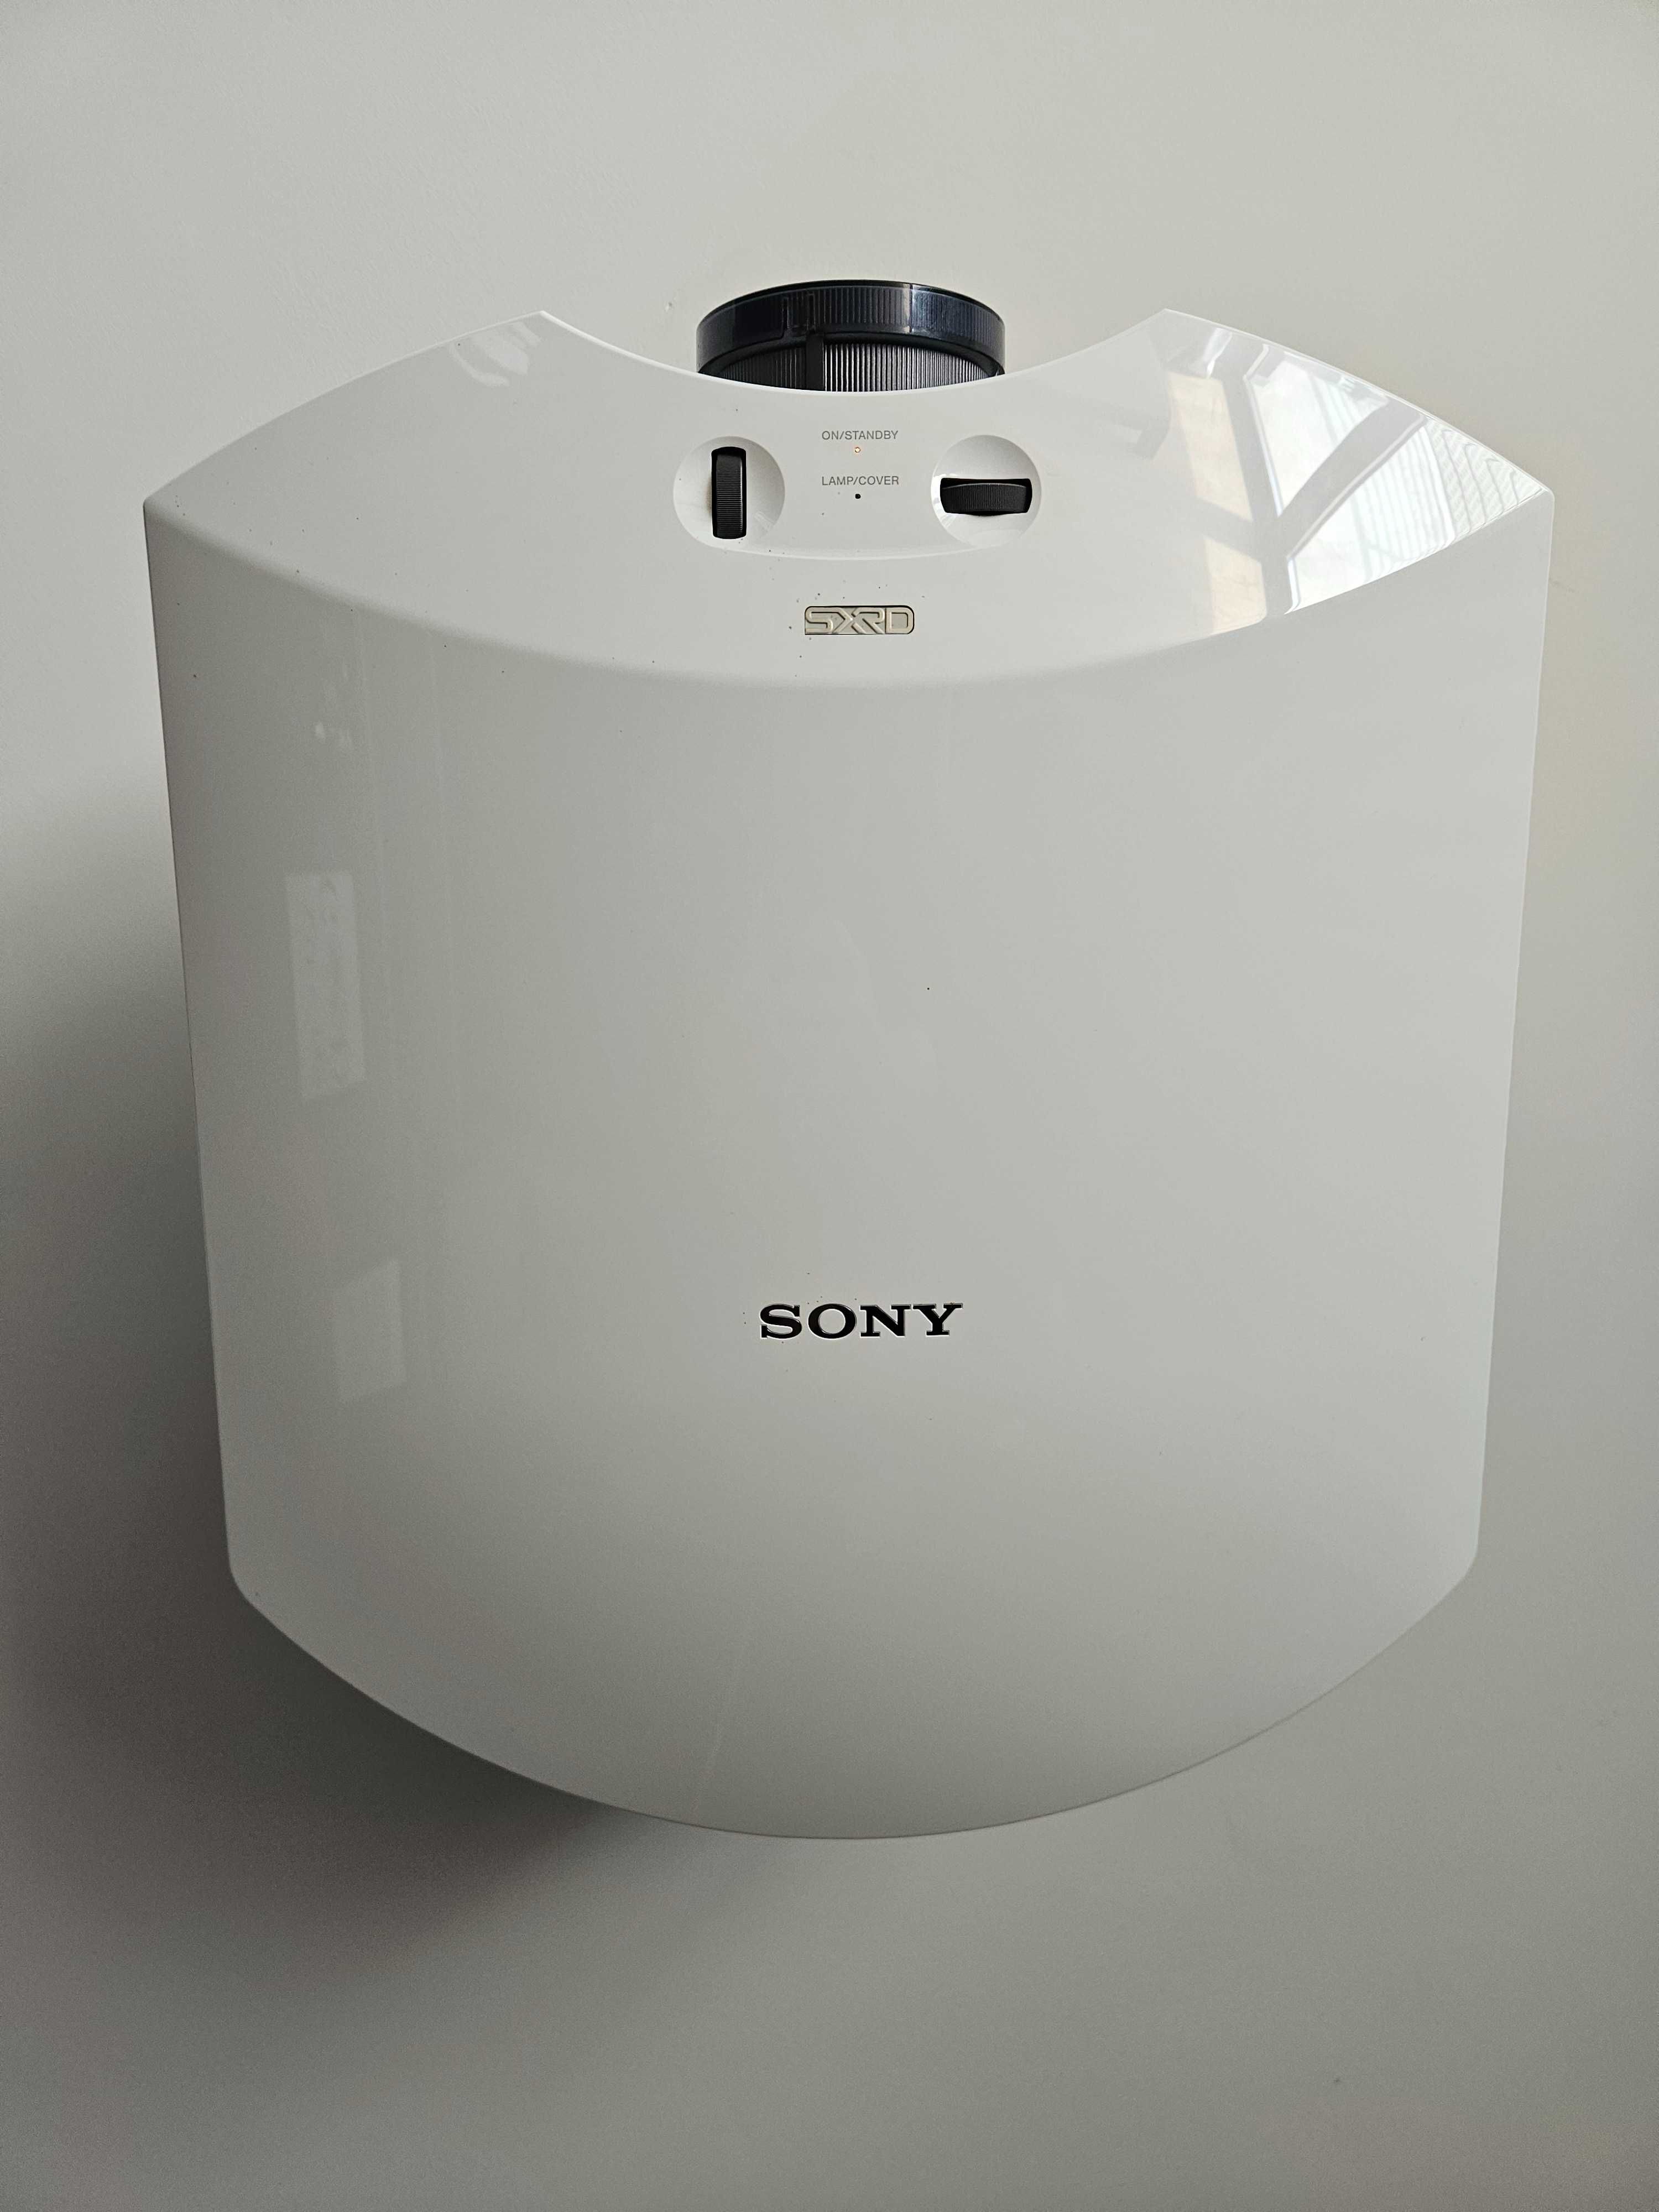 Projektor Sony HW55es fullHD w technologi SXRD !!!